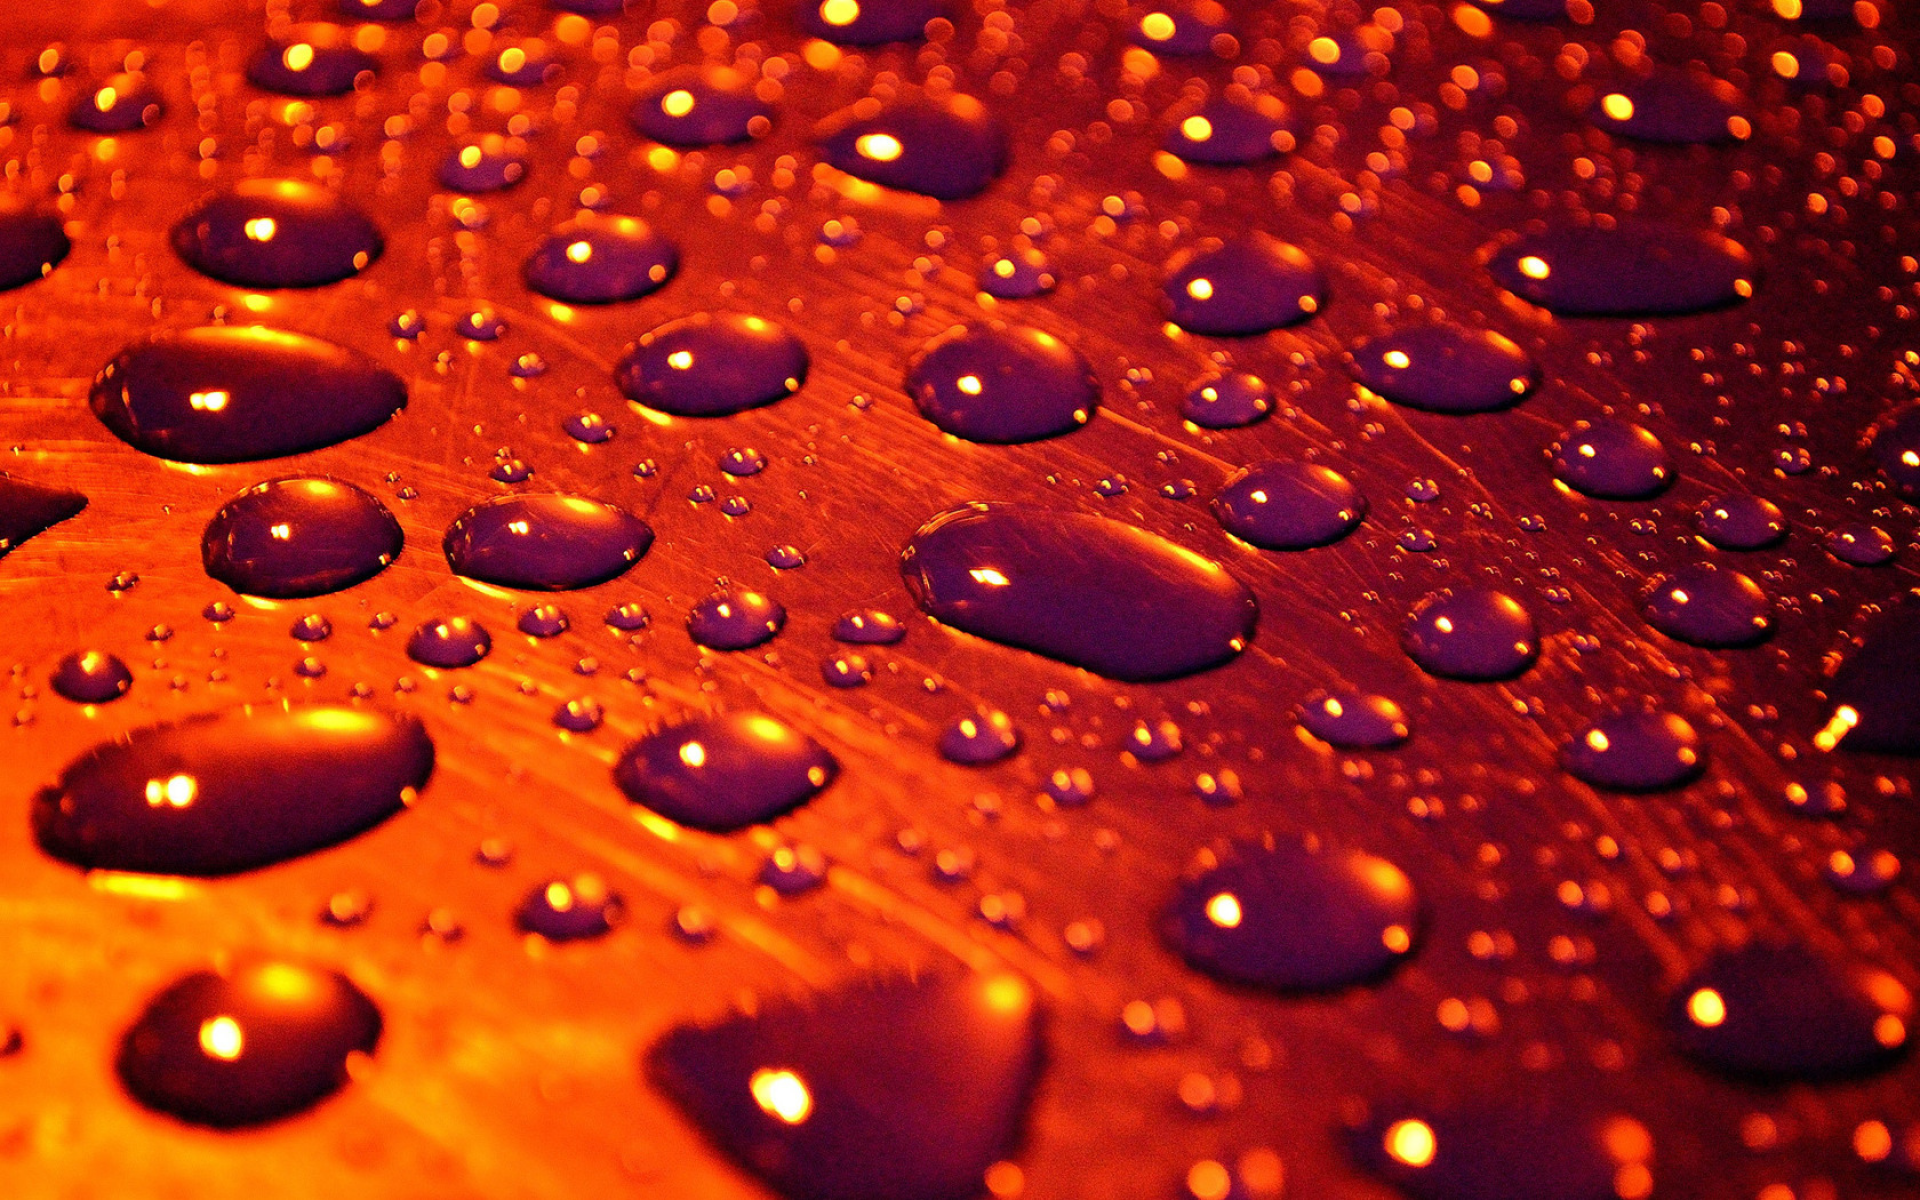 капли, поверхность, вода, macro, drops of rain